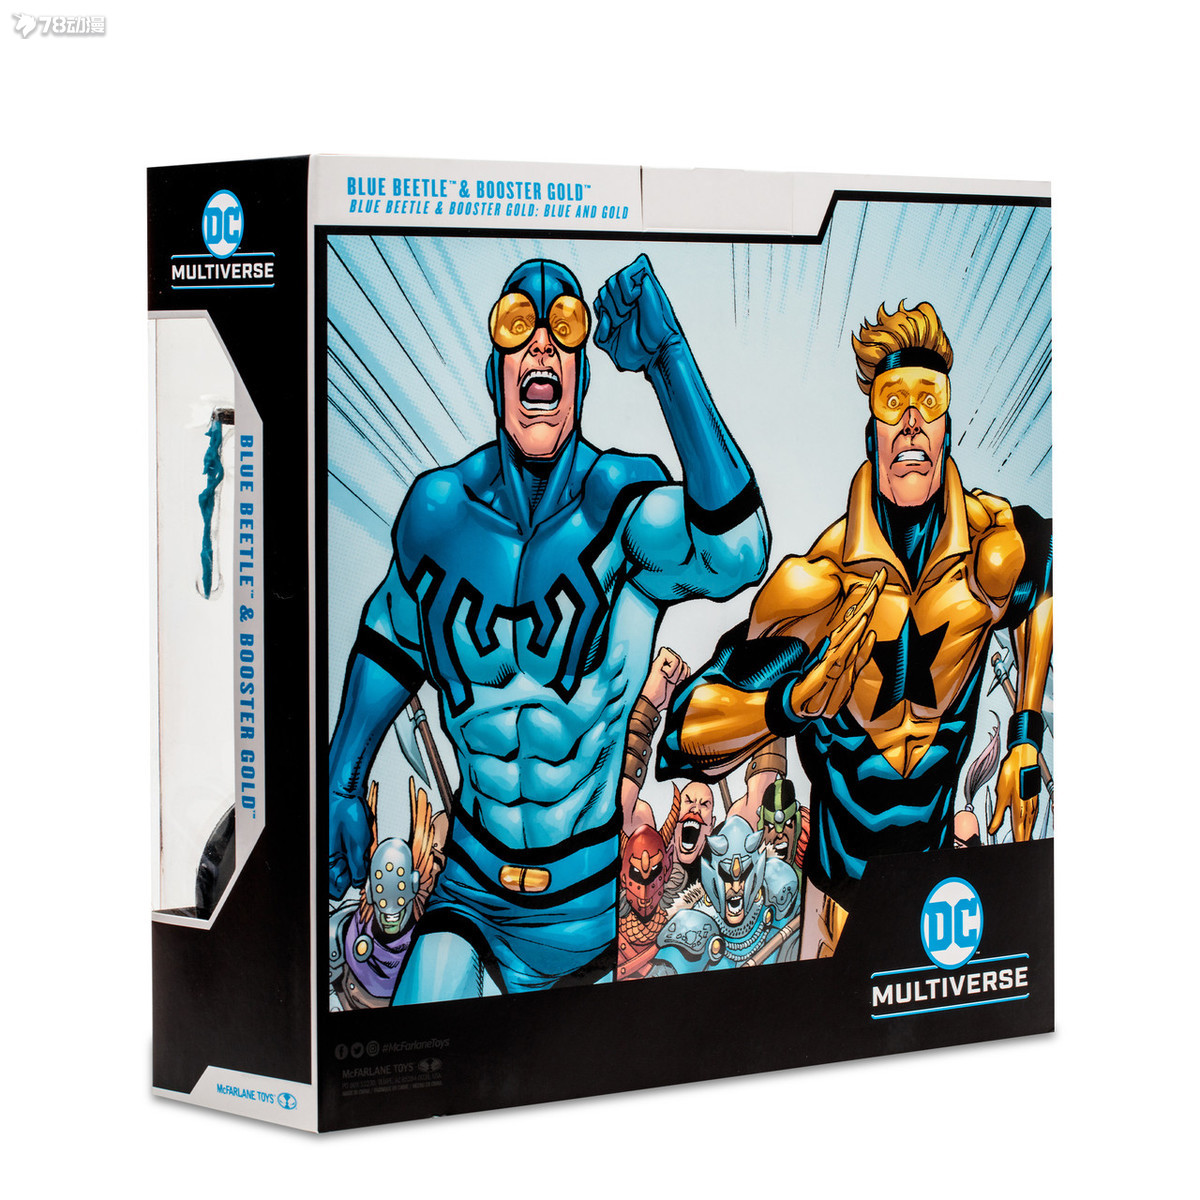 麥克法蘭 新品 DC多元宇宙 藍甲蟲&金色先鋒 7寸(177mm)高 可動人偶 雙人盒裝